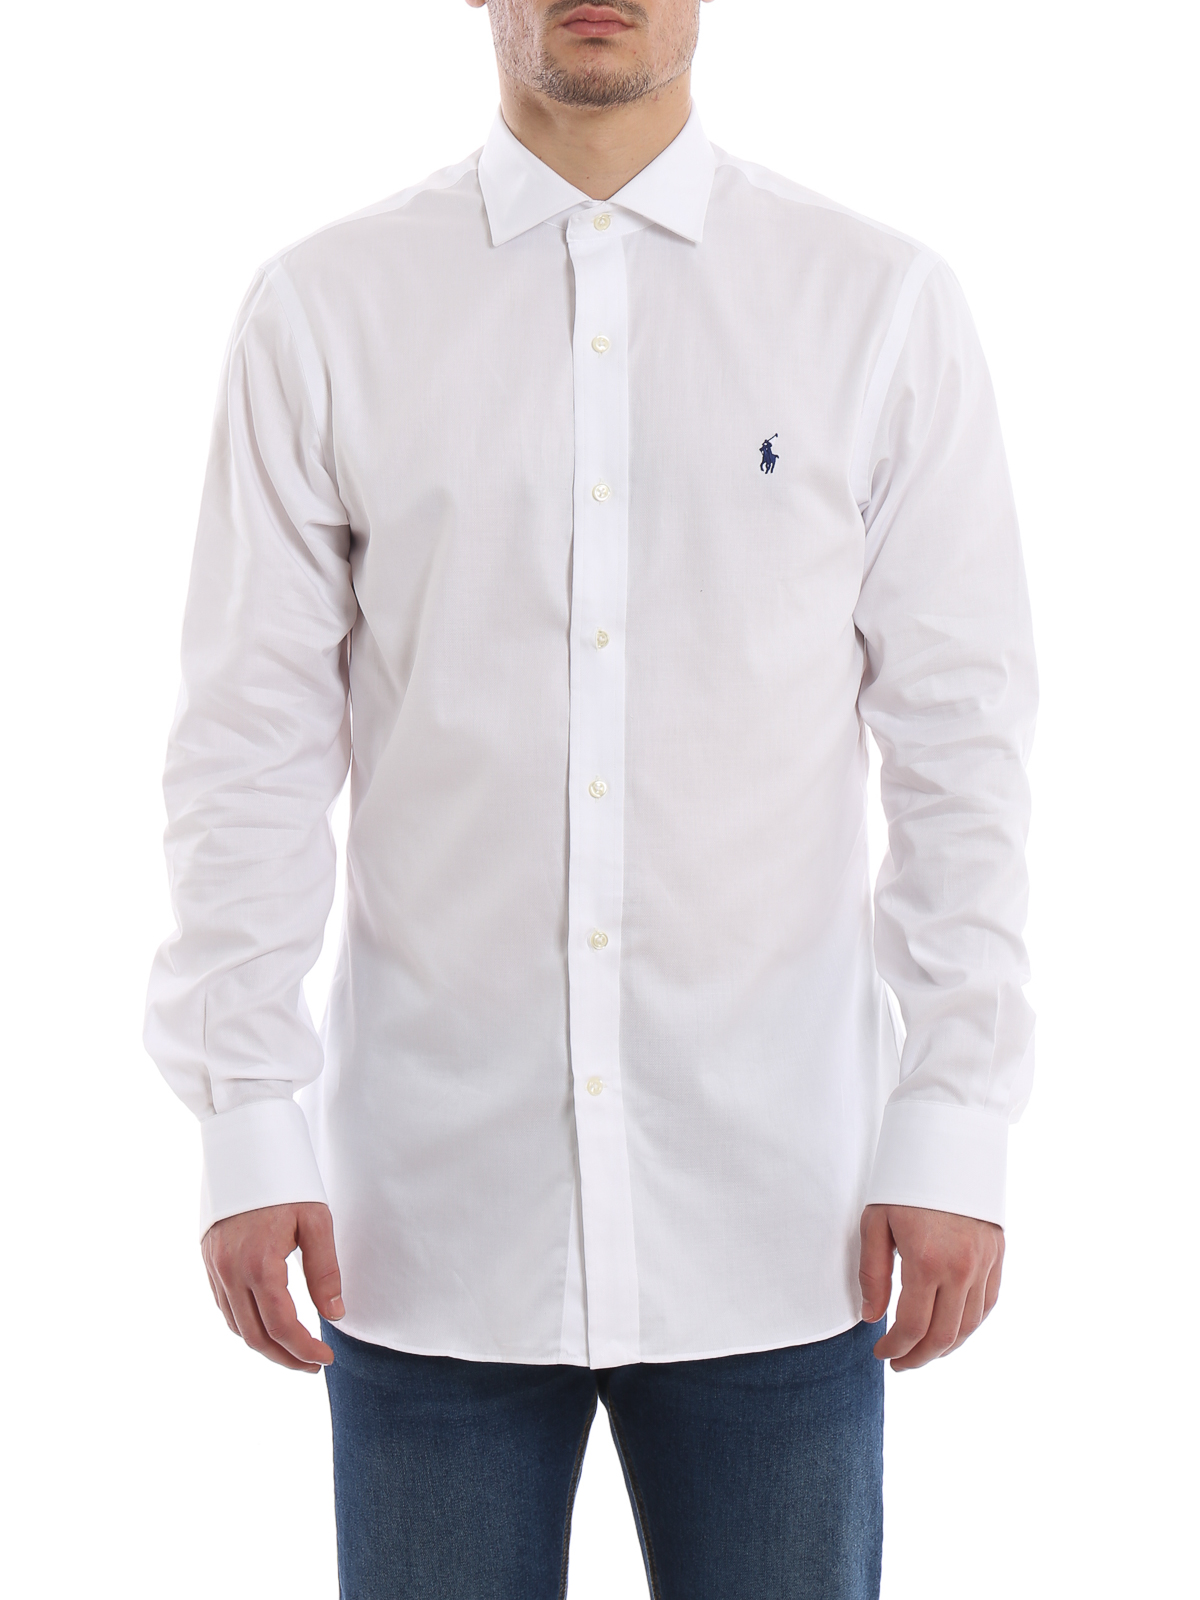 Hemden Polo Ralph Lauren - Hemd - Weiß - 712732129006 | iKRIX Shop